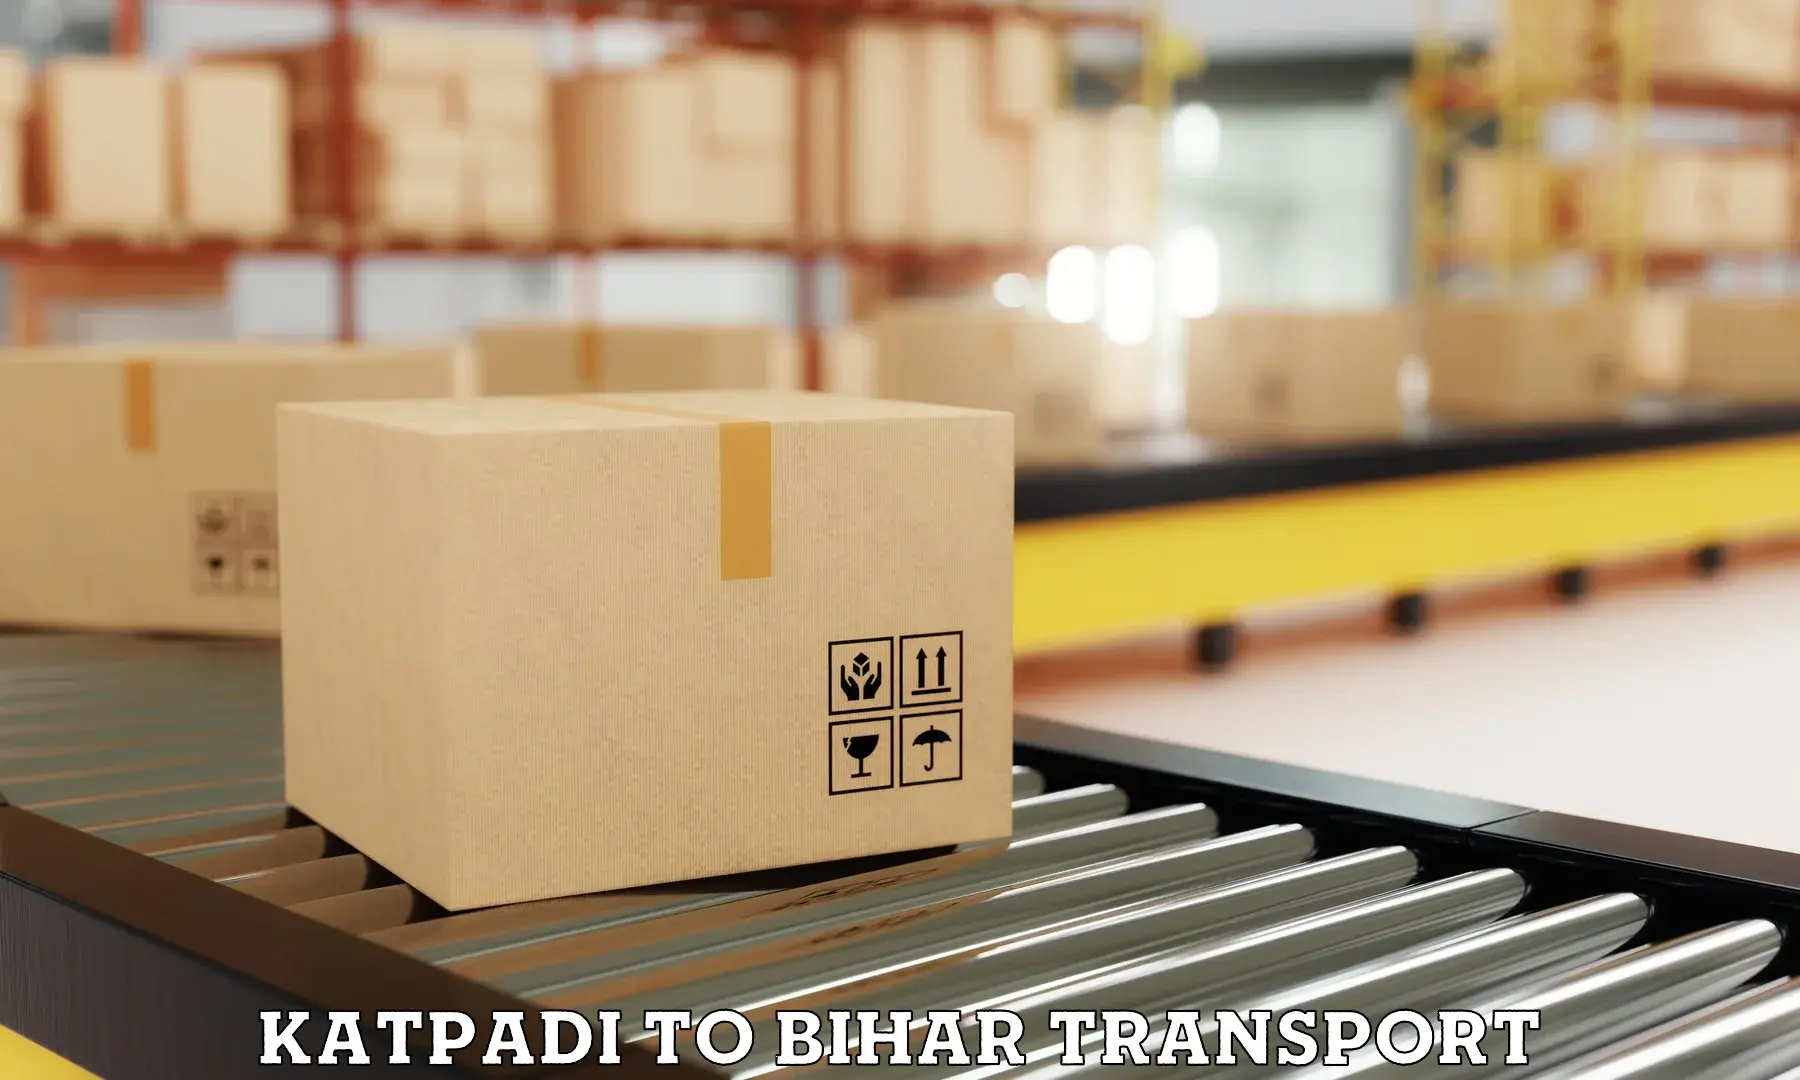 Package delivery services Katpadi to Malmaliya